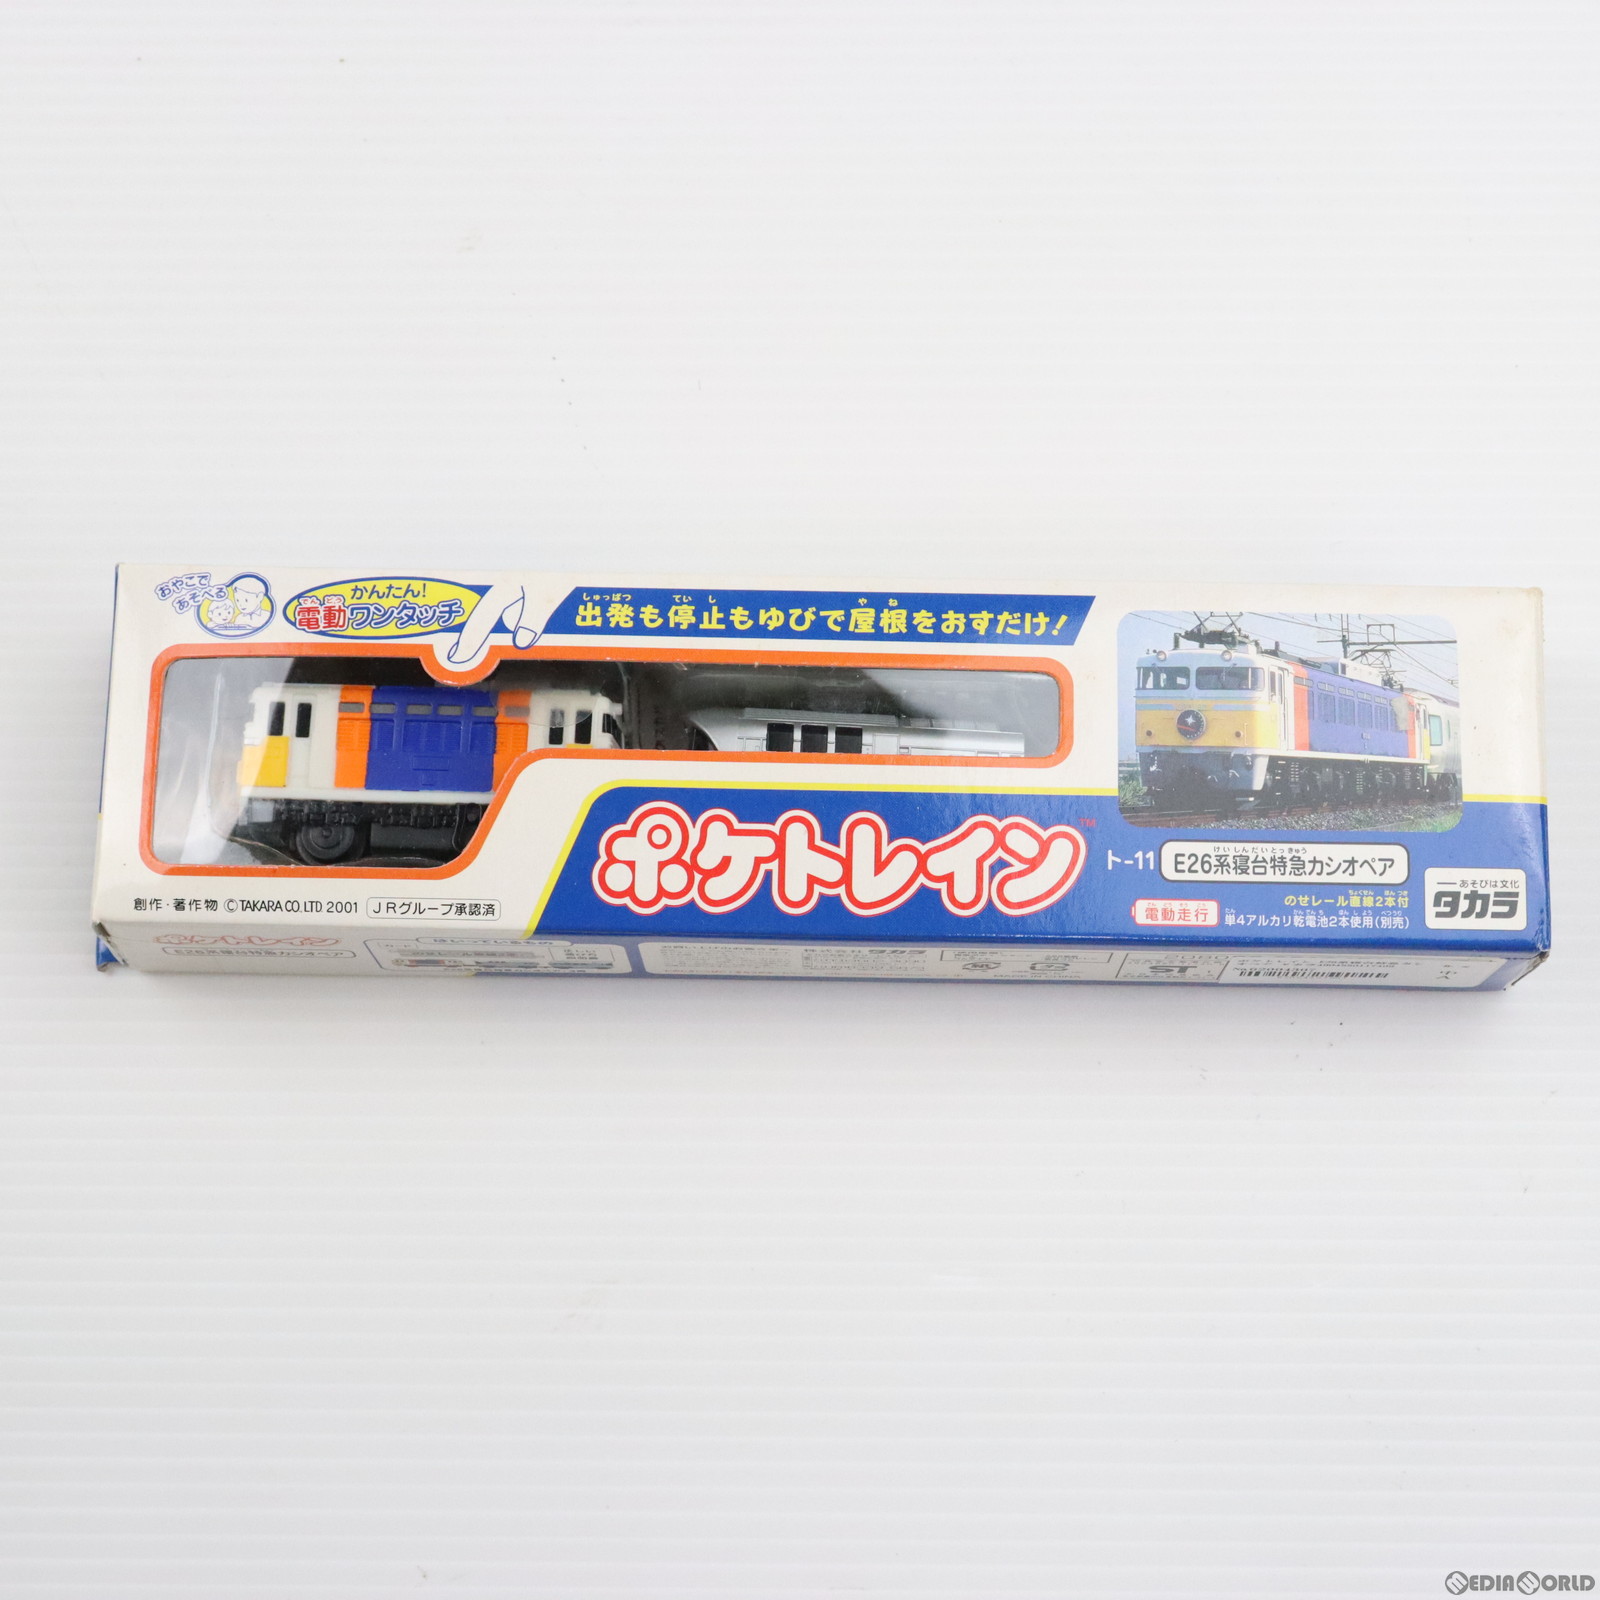 【中古即納】[RWM]ポケトレイン E26系寝台特急カシオペア 3両セット(動力付き) 鉄道模型 タカラ(20011031)